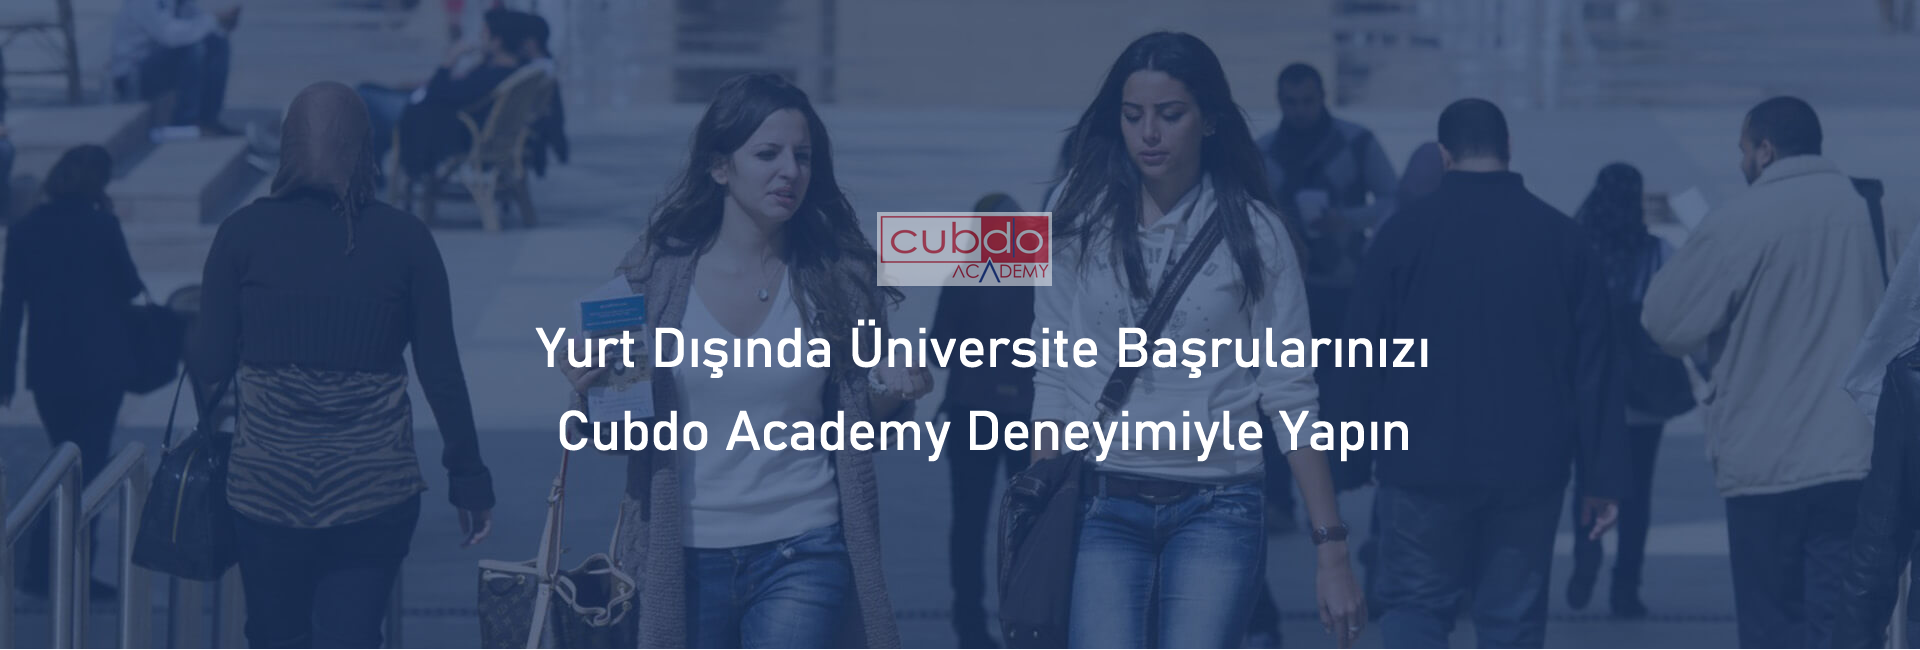 Cubdo Academy